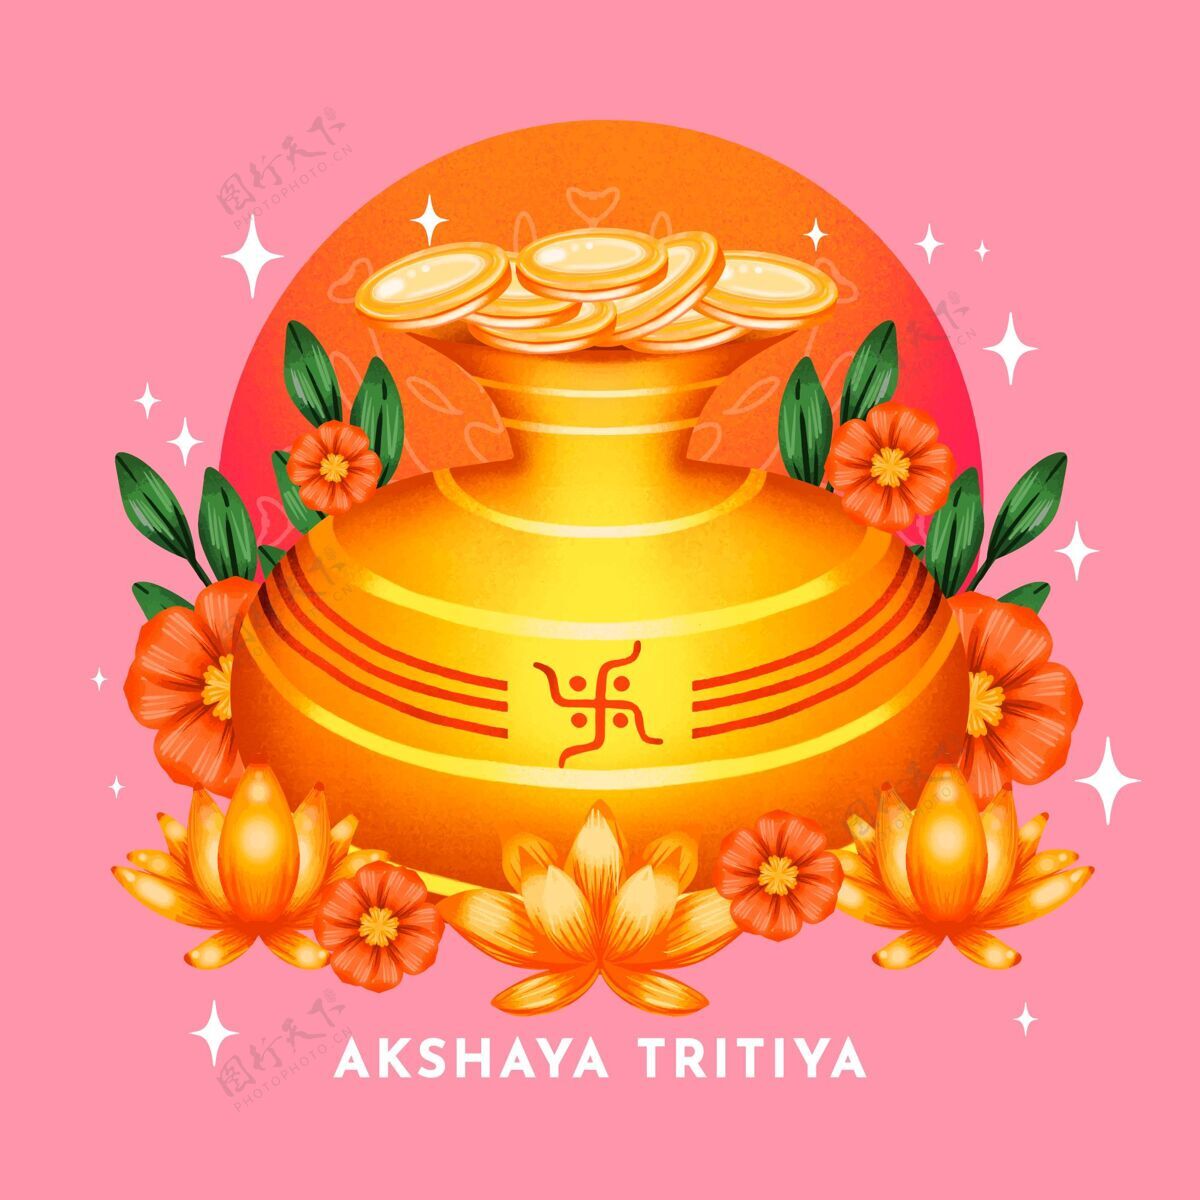 水彩画水彩画akshayatritiya插图印度阿卡沙亚tritiya插图